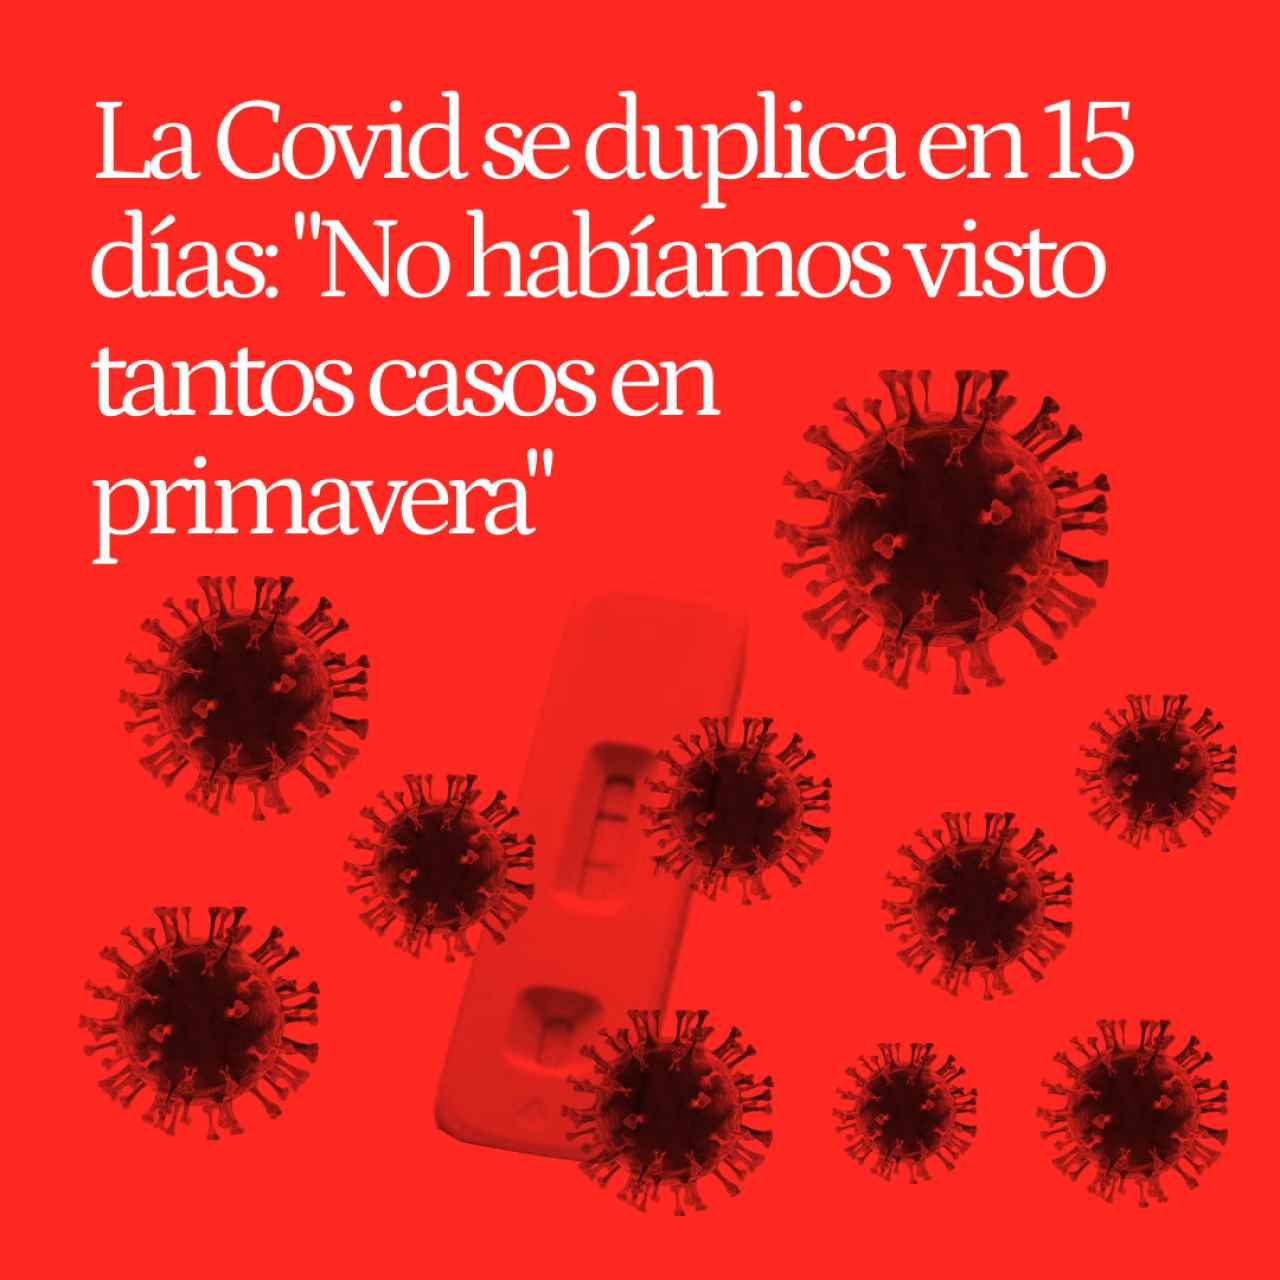 La Covid en España se duplica en 15 días: "No habíamos visto tantos casos en primavera"